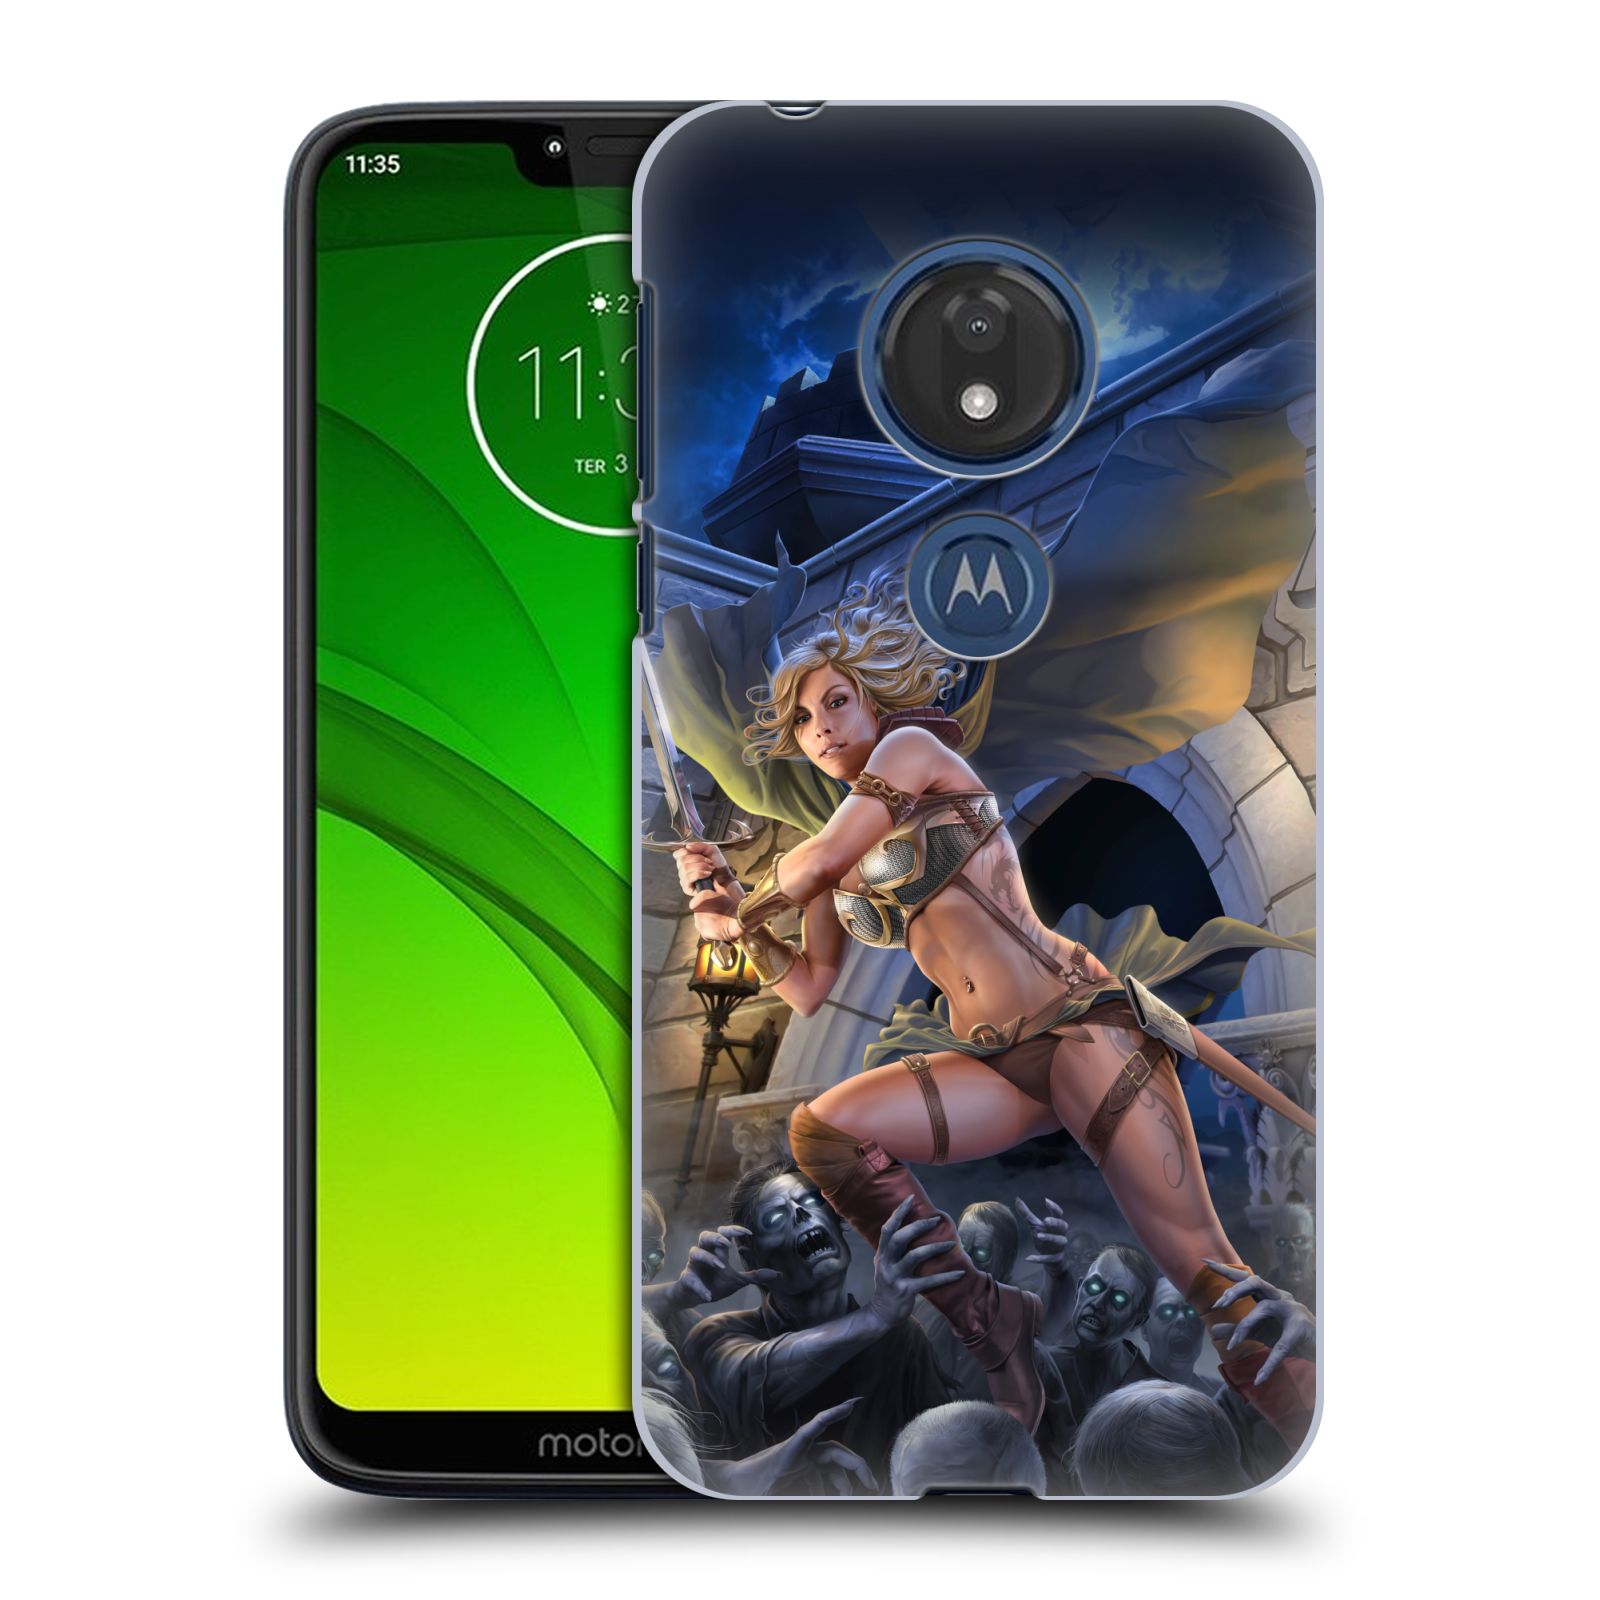 Pouzdro na mobil Motorola Moto G7 Play - HEAD CASE - Fantasy kresby Tom Wood - Princezna bojovnice a zombies